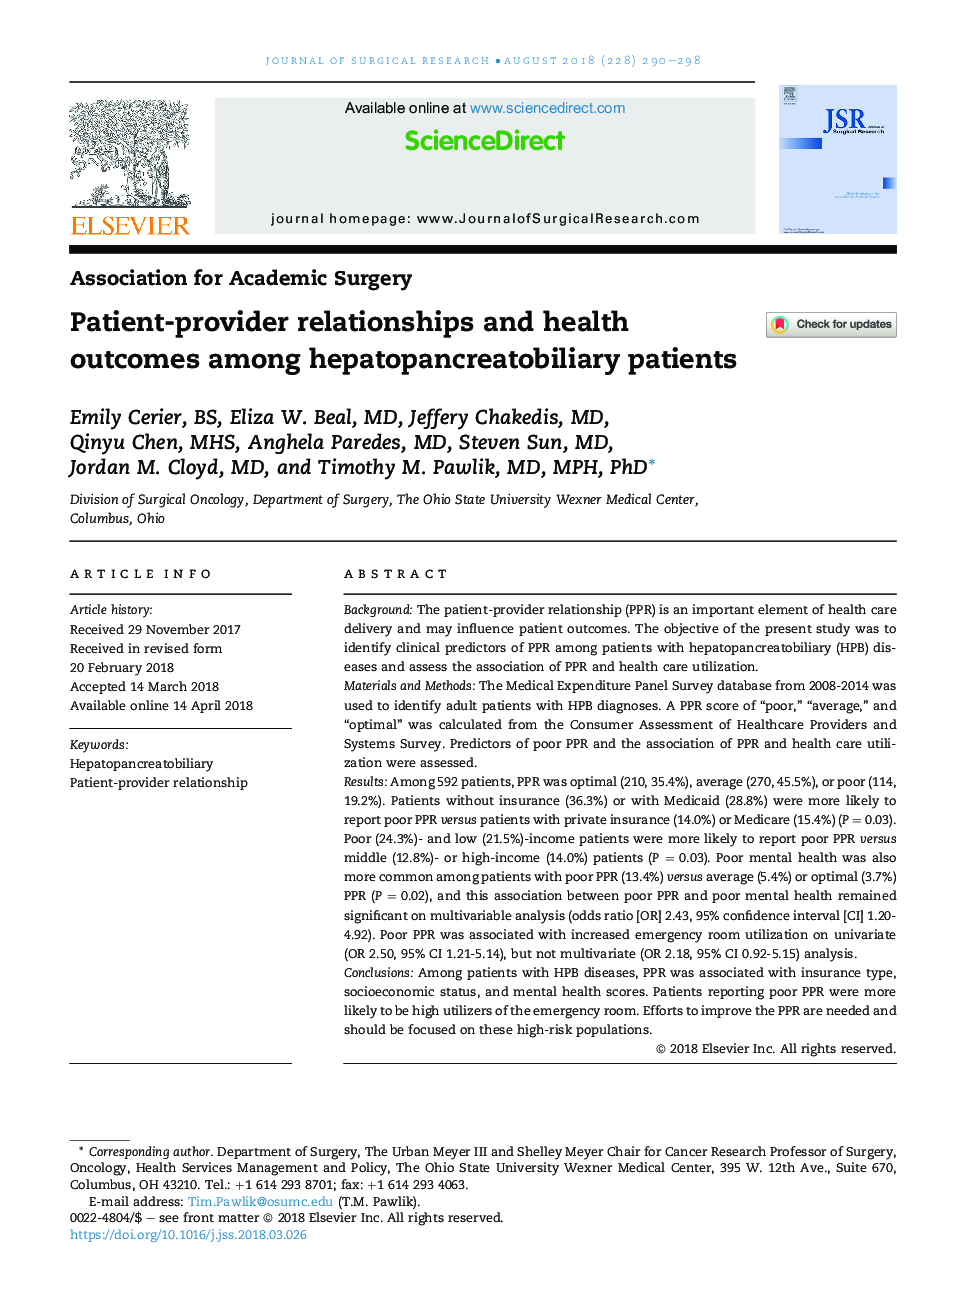 ارتباطات بیمار و ارائه دهنده و نتایج سلامت در بیماران مبتلا به هپاتوپانکروبلیاریار 